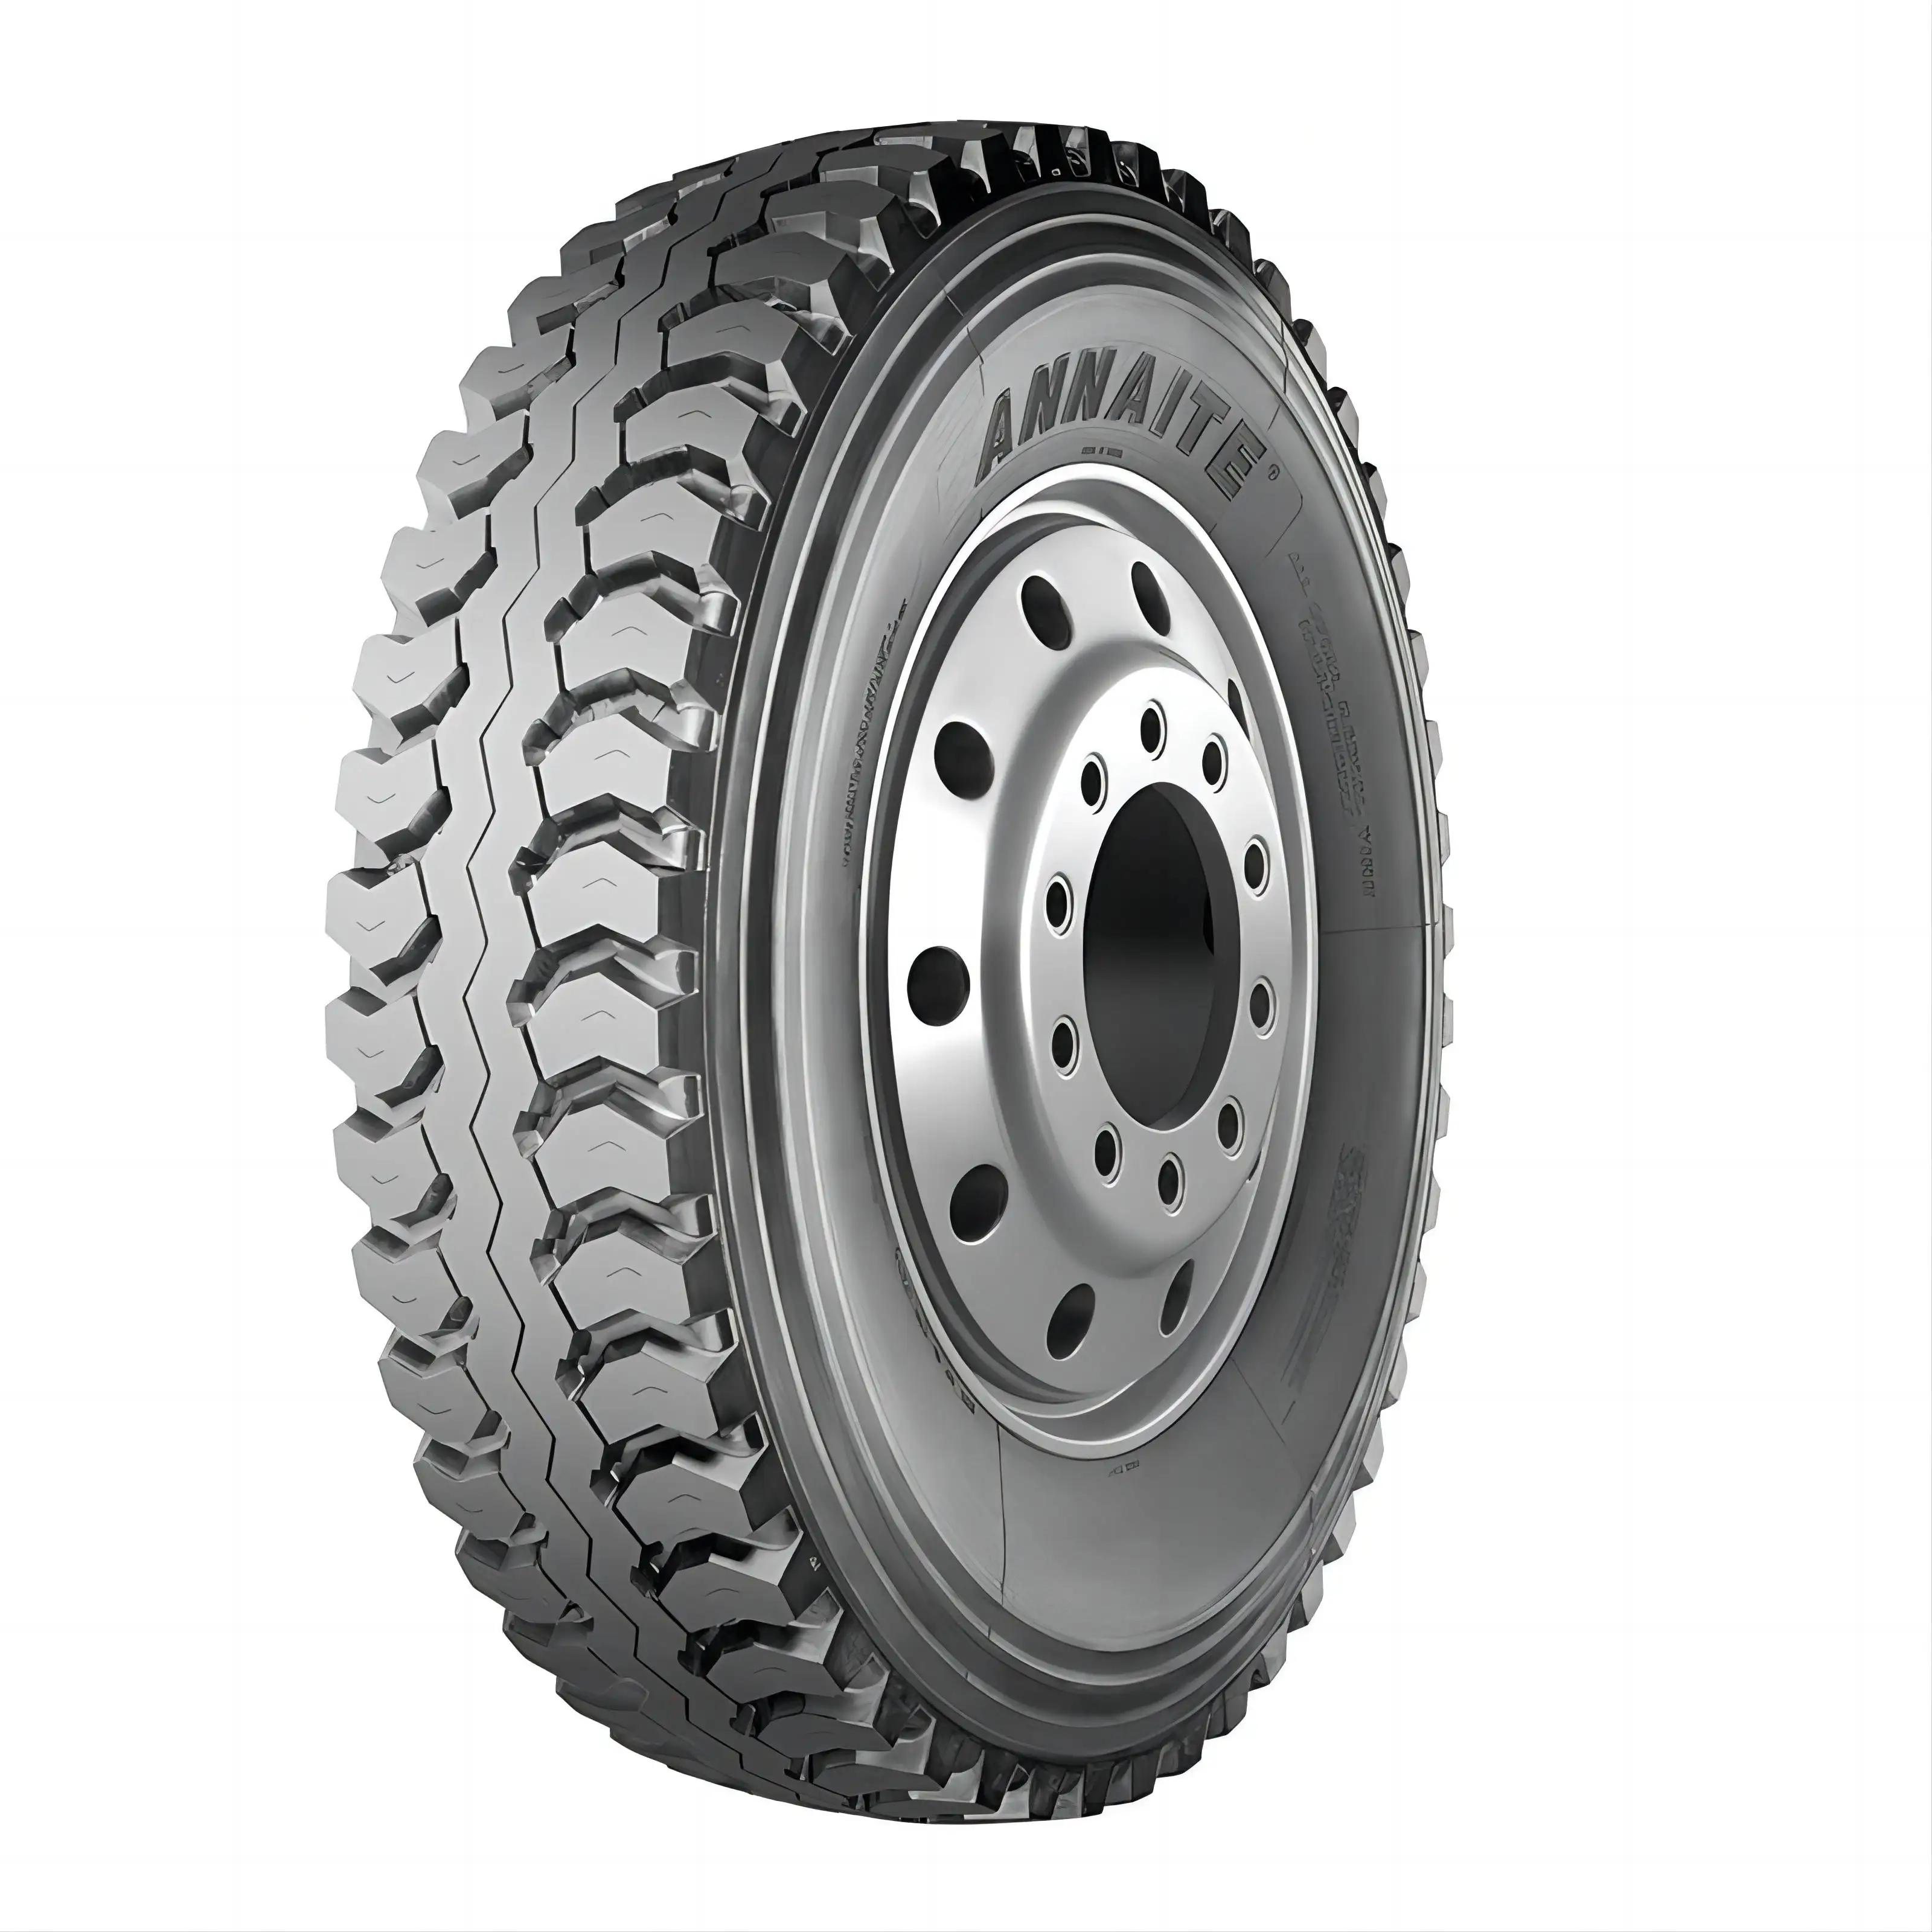 Mining lug truck pneu preço 10.00r20 1000x20 pneu radial 11.00r20 1200r20 12.00r20 Pneus annaite para caminhões basculantes pesados